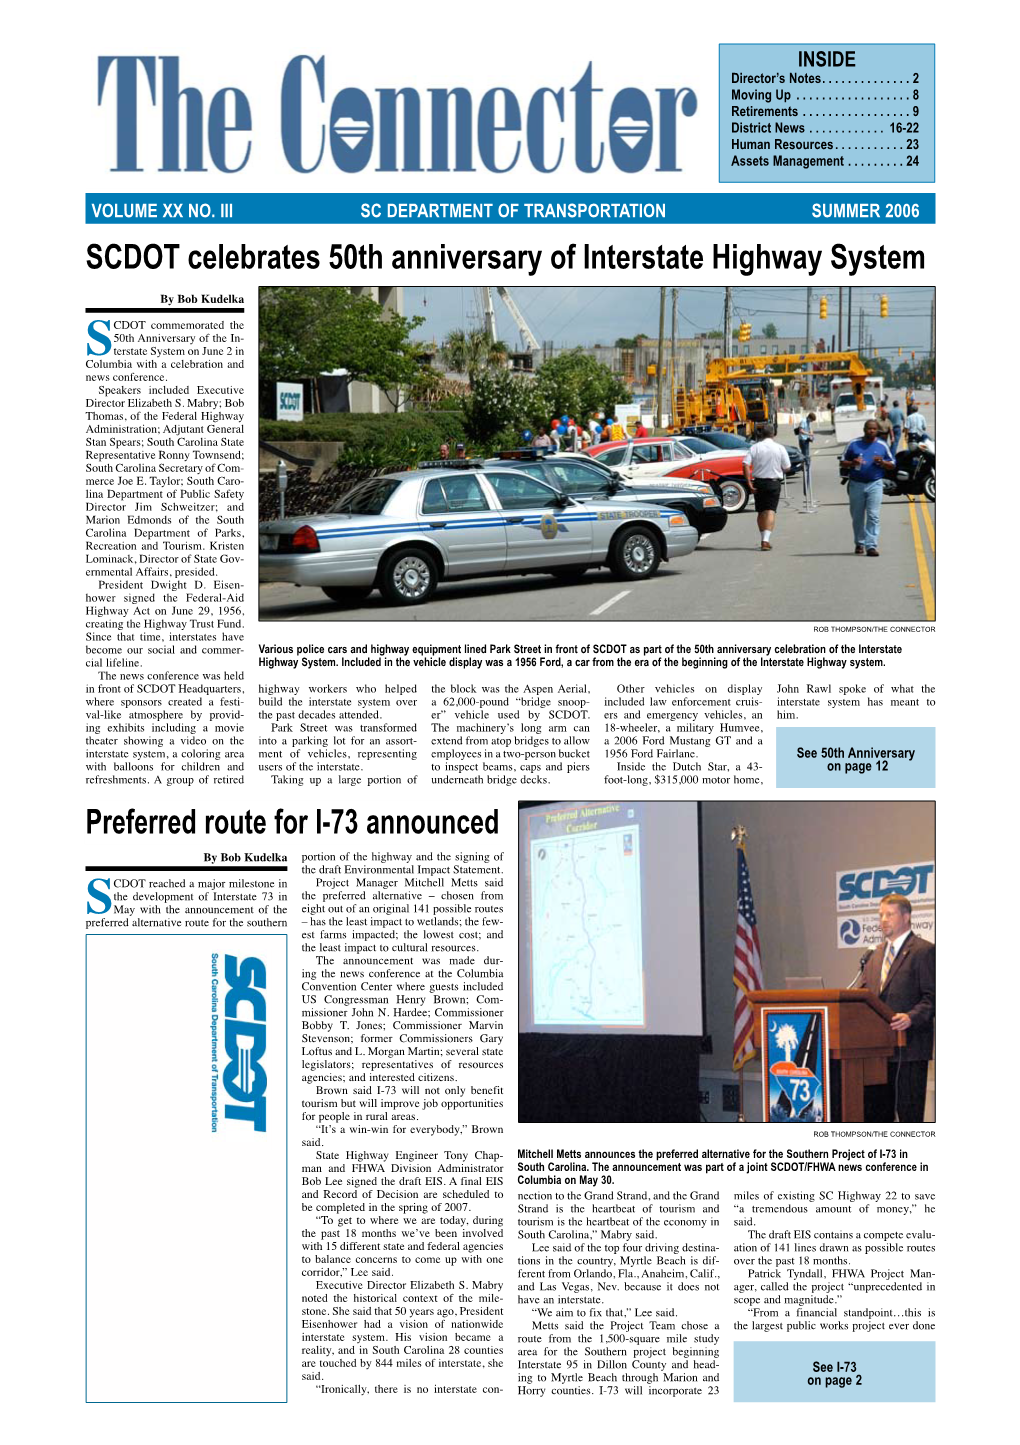 Preferred Route for I-73 Announced SCDOT Celebrates 50Th